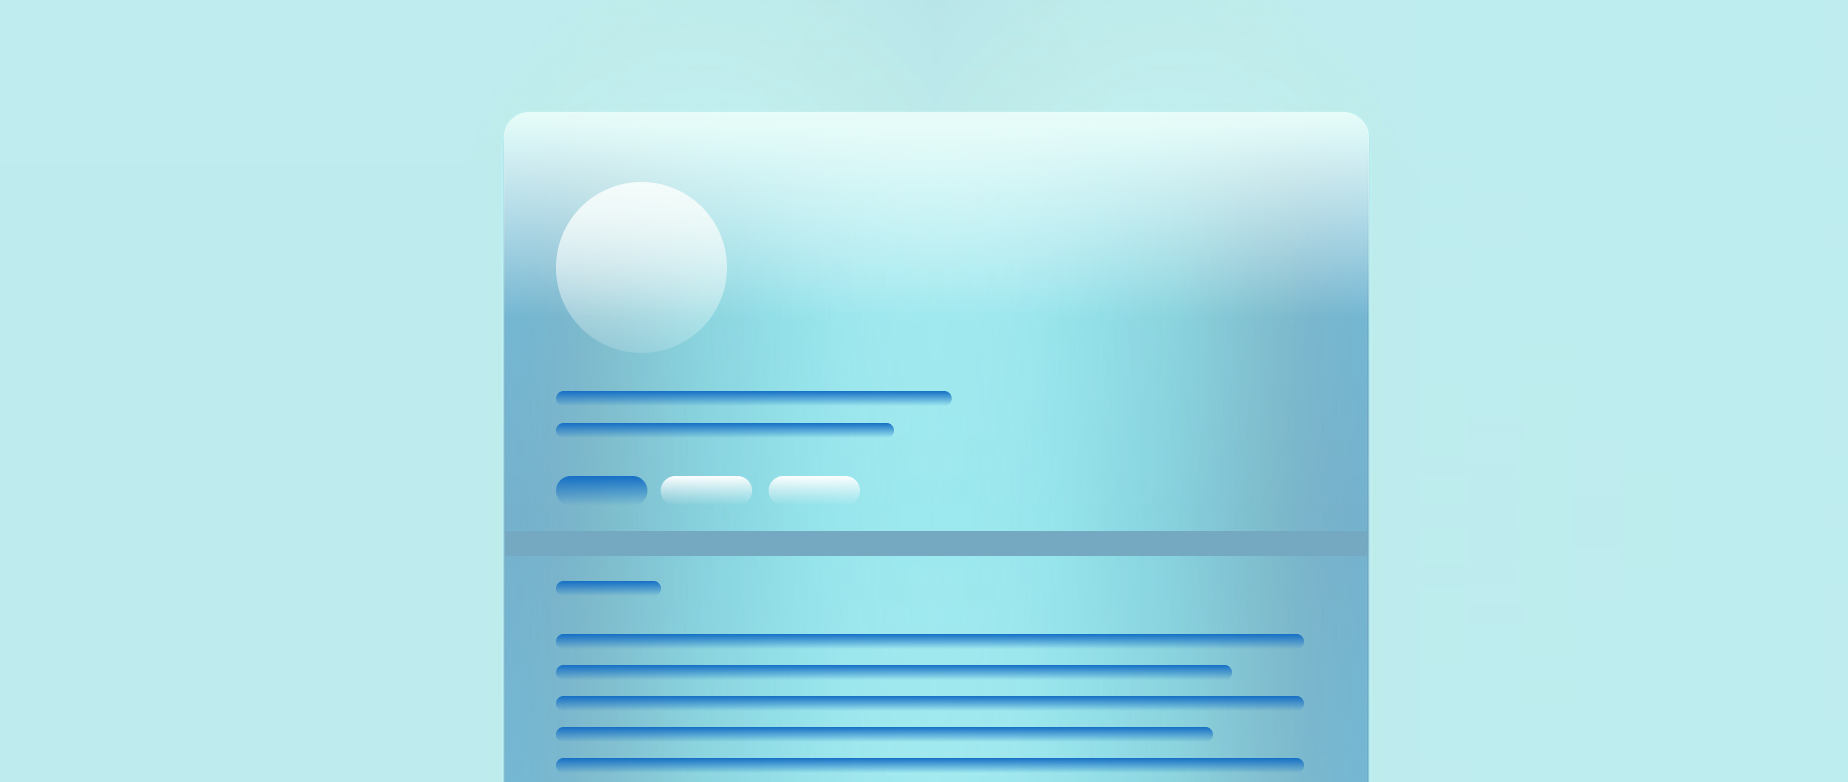 A light blue LinkedIn profile page on a light blue background.